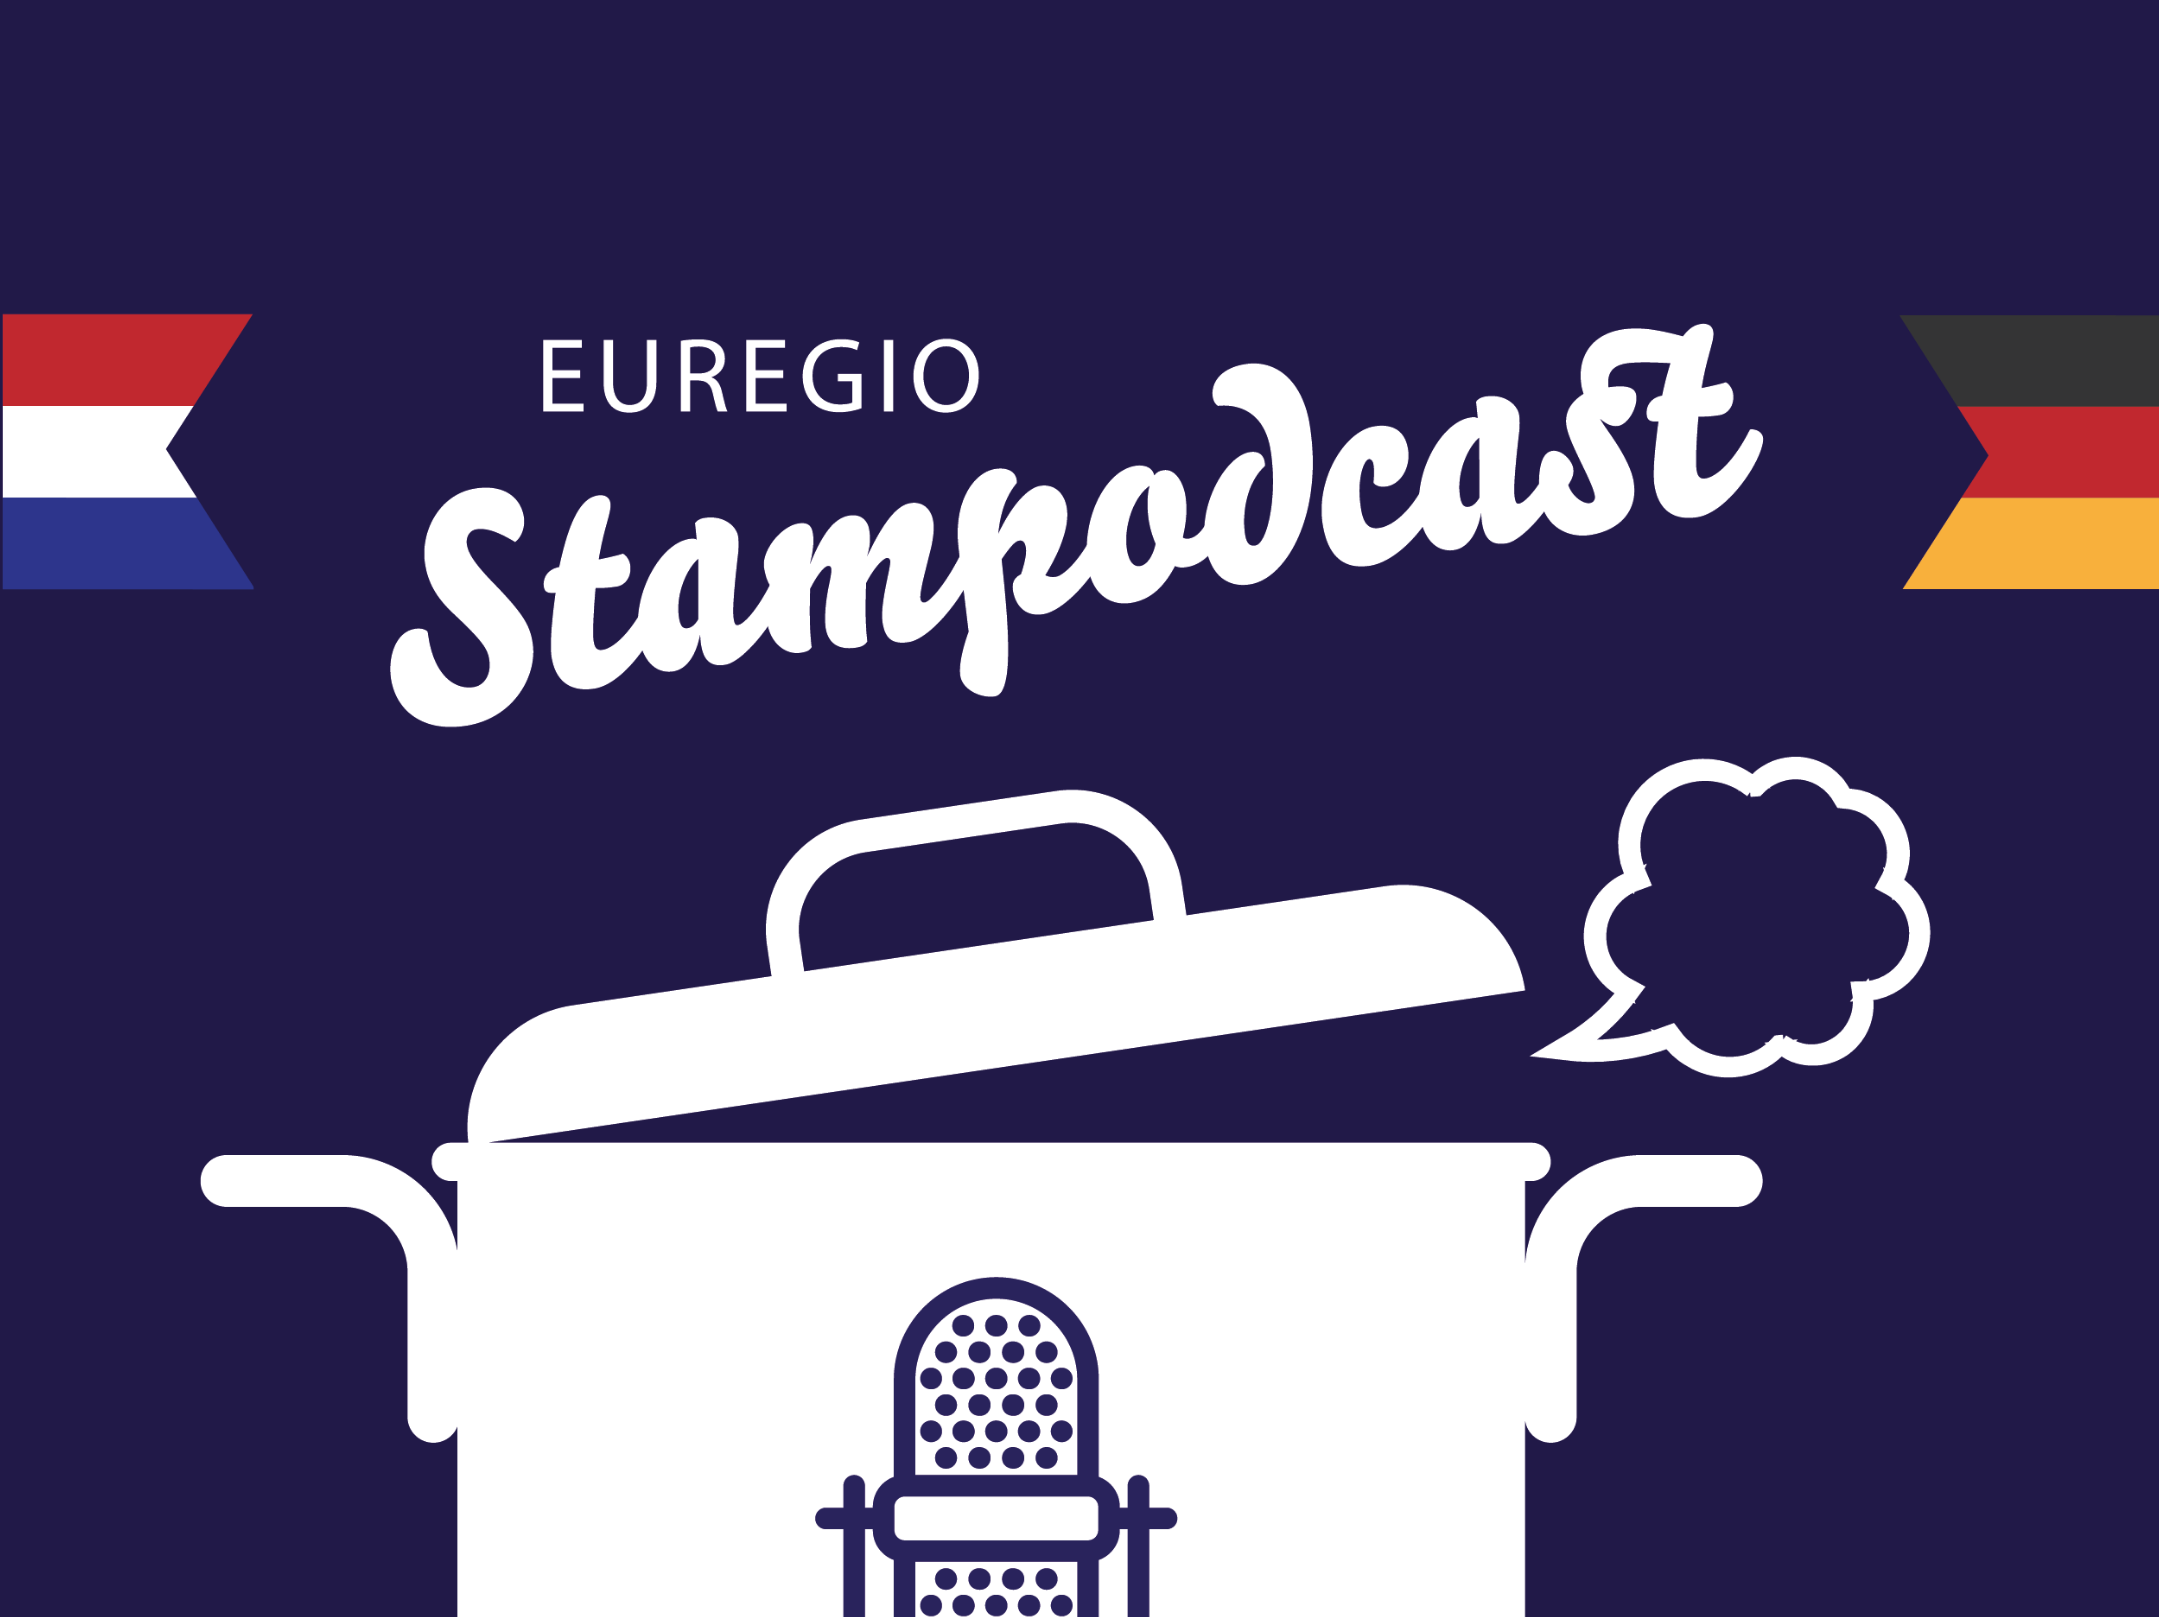 Eerste drie afleveringen van Nederlands-Duitse ‚Stampodcast‘ online